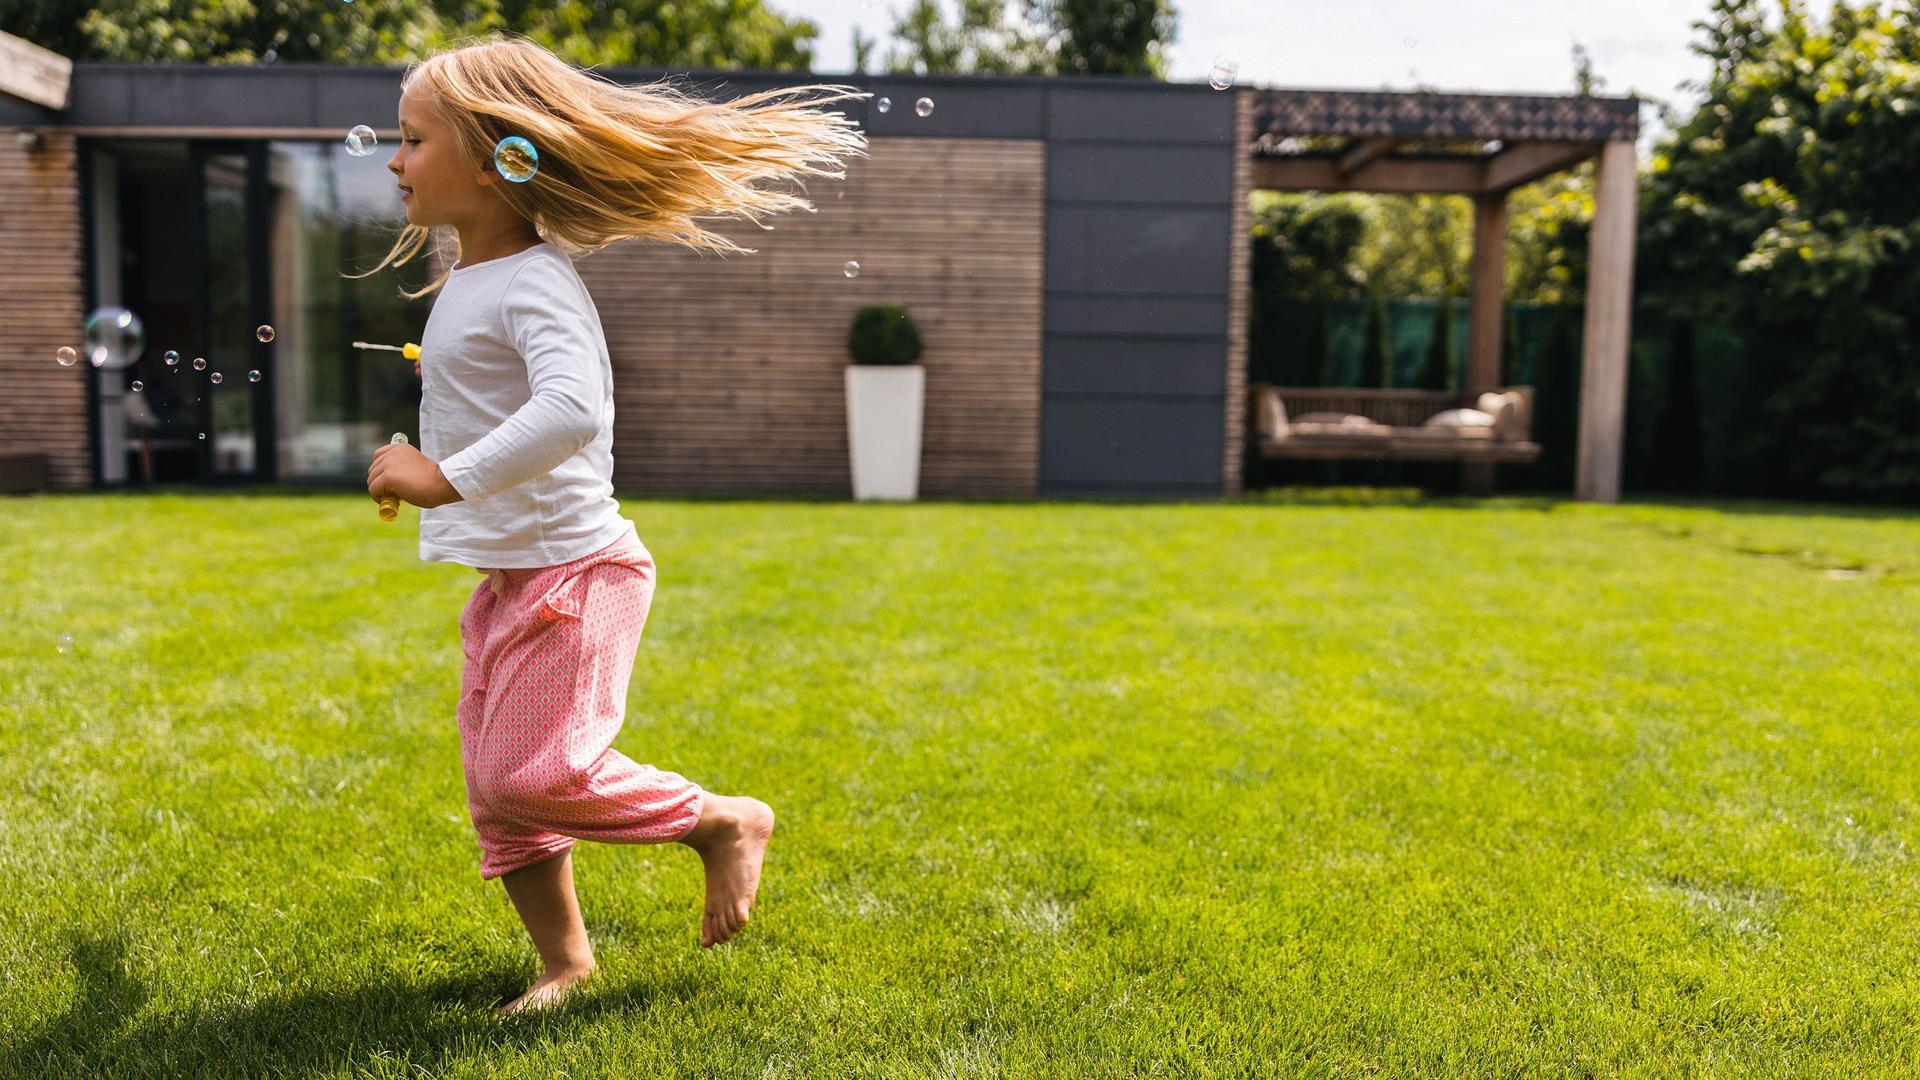 Blondes Mädchen rennt barfuß über Rasen in einem Garten. Um sie herum sind Seifenblasen.